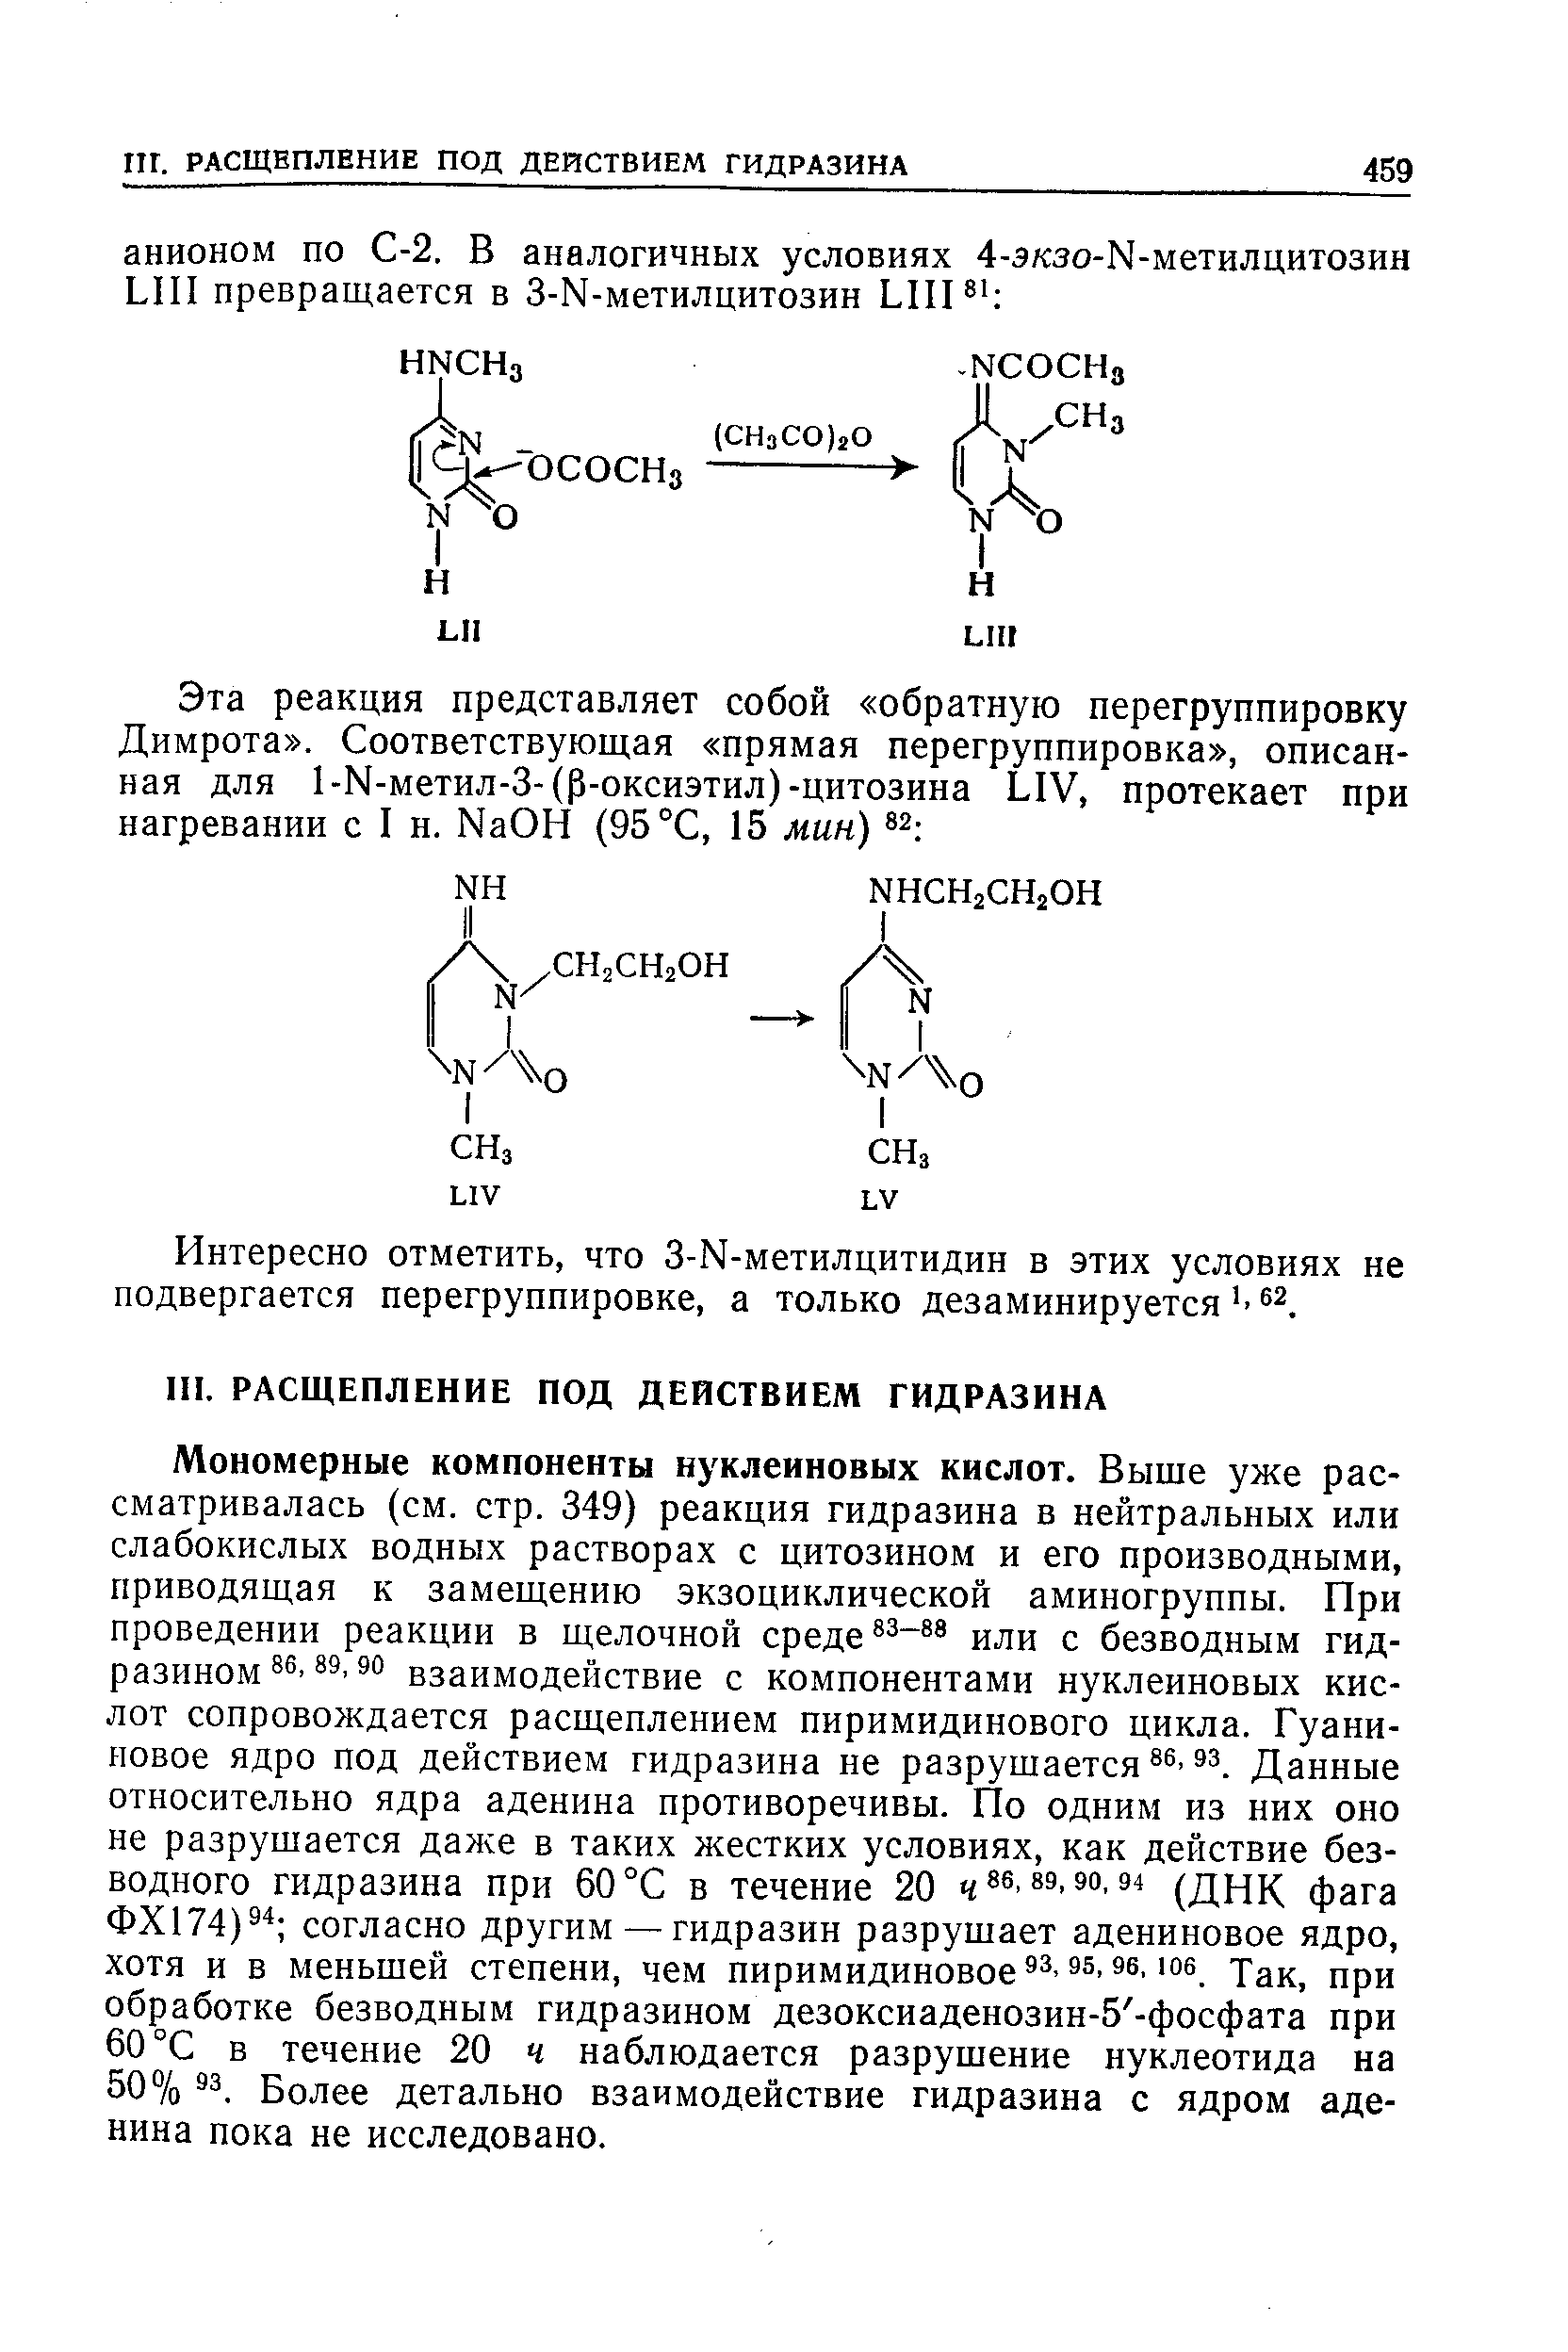 Мономерные компоненты нуклеиновых кислот. Выще уже рассматривалась (см. стр. 349) реакция гидразина в нейтральных или слабокислых водных растворах с цитозином и его производными, приводящая к замещению экзоциклической аминогруппы. При проведении реакции в щелочной среде -88 иди с безводным гидразином 3° взаимодействие с компонентами нуклеиновых кислот сопровождается расщеплением пиримидинового цикла. Гуани-иовое ядро под действием гидразина не разрушается Данные относительно ядра аденина противоречивы. По одним из них оно не разрушается даже в таких жестких условиях, как действие безводного гидразина при 60 °С в течение 20 486,89,90,94 (днК фага ФХ174) согласно другим — гидразин разрушает адениновое ядро, хотя и в меньшей степени, чем пиримидиновое s. Так, при обработке безводным гидразином дезоксиаденозин-5 -фосфата при 60 °С в течение 20 ч наблюдается разрушение нуклеотида на 50% S3. Более детально взаимодействие гидразина с ядром аденина пока не исследовано.